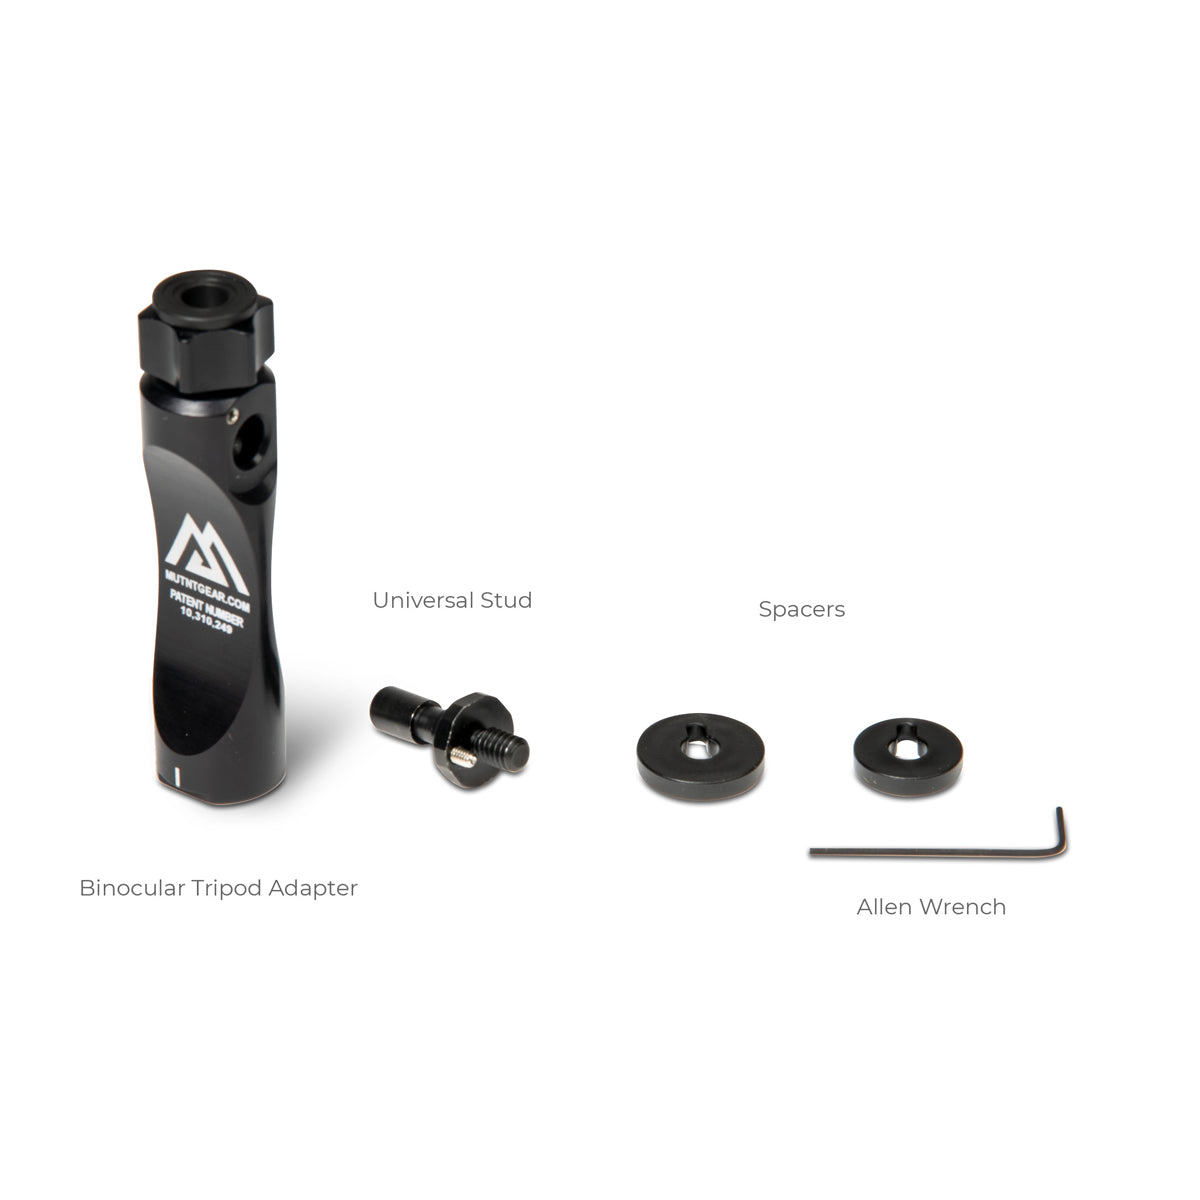 MUTNT Gear Gen 2 Binocular Tripod Adapter Kit in  by GOHUNT | MUTNT - GOHUNT Shop